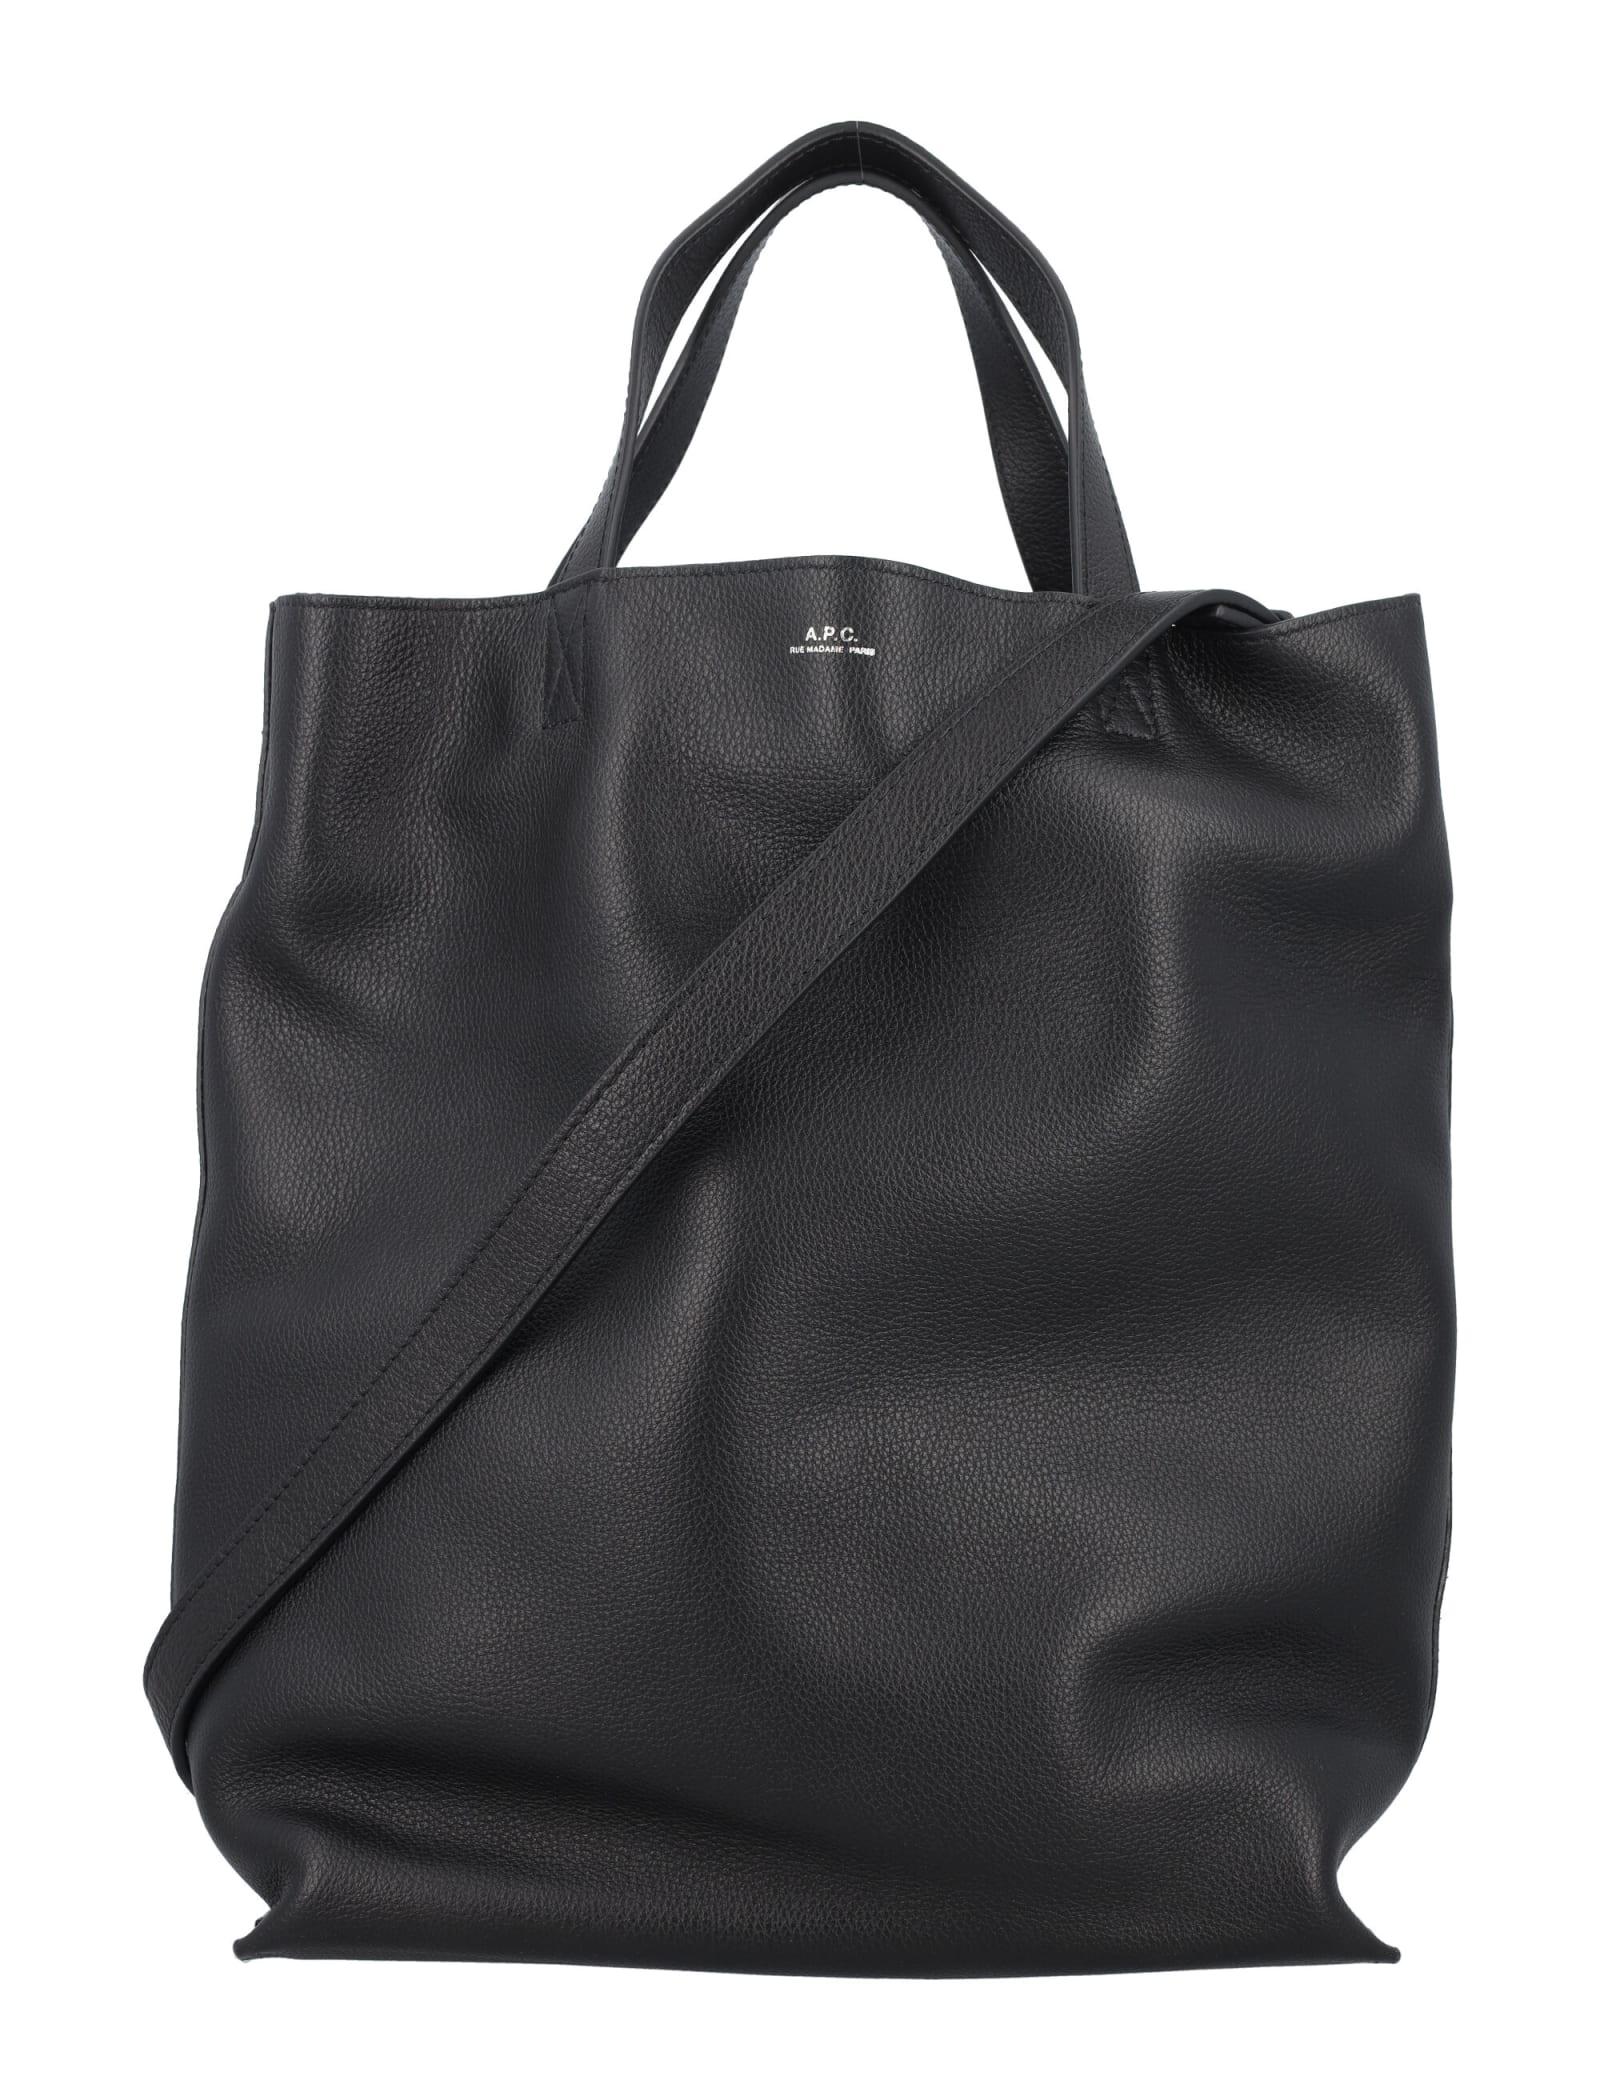 A.P.C. Maiko Medium Shopper Tote Bag in Black | Lyst